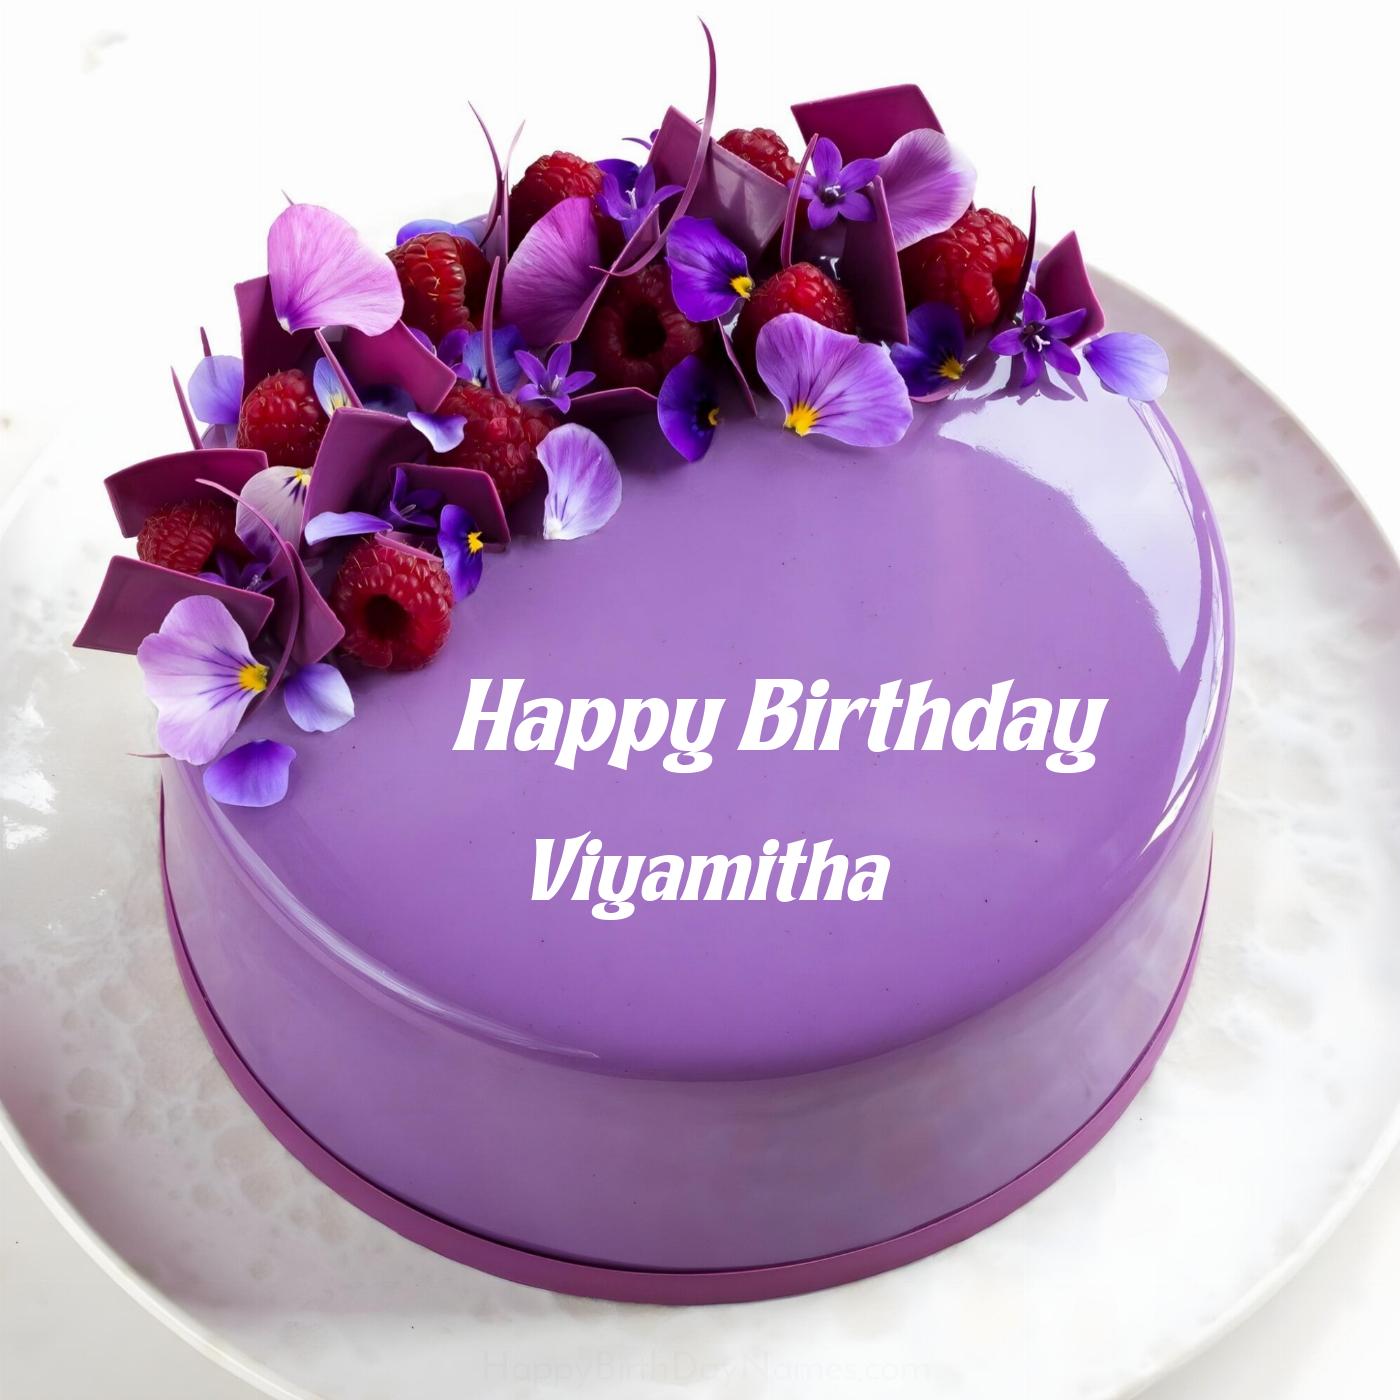 Happy Birthday Viyamitha Violet Raspberry Cake